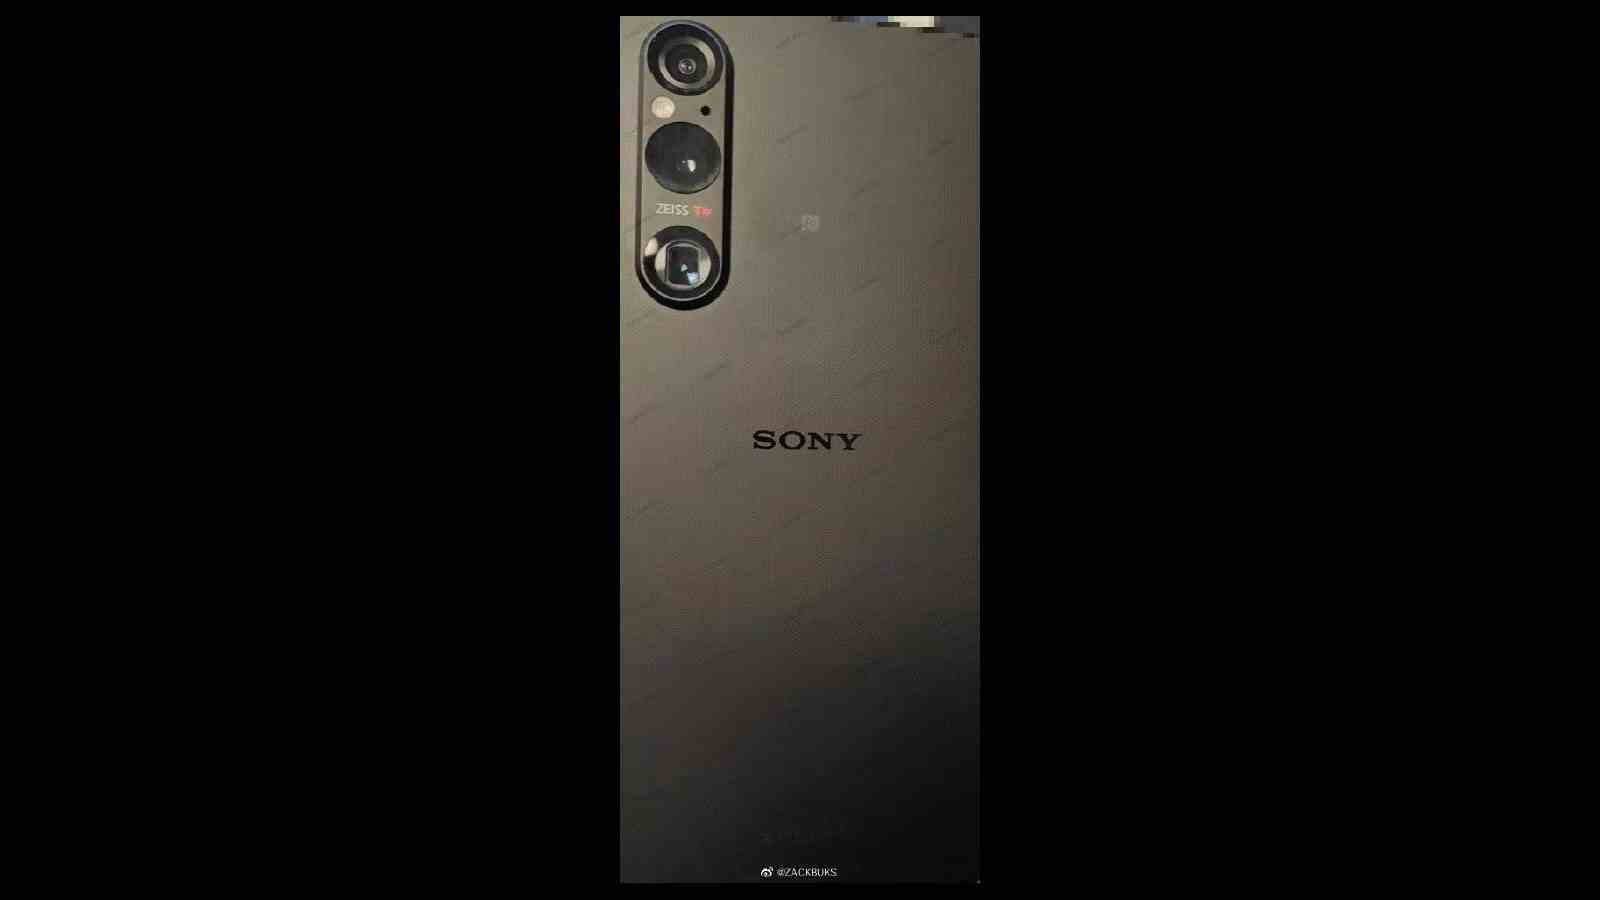 Sızan Sony Xperia 1 V görüntüsü - İlk iddia edilen Sony Xperia 1 V görüntüsü, yenilenmiş bir kamera dizisini gösteriyor